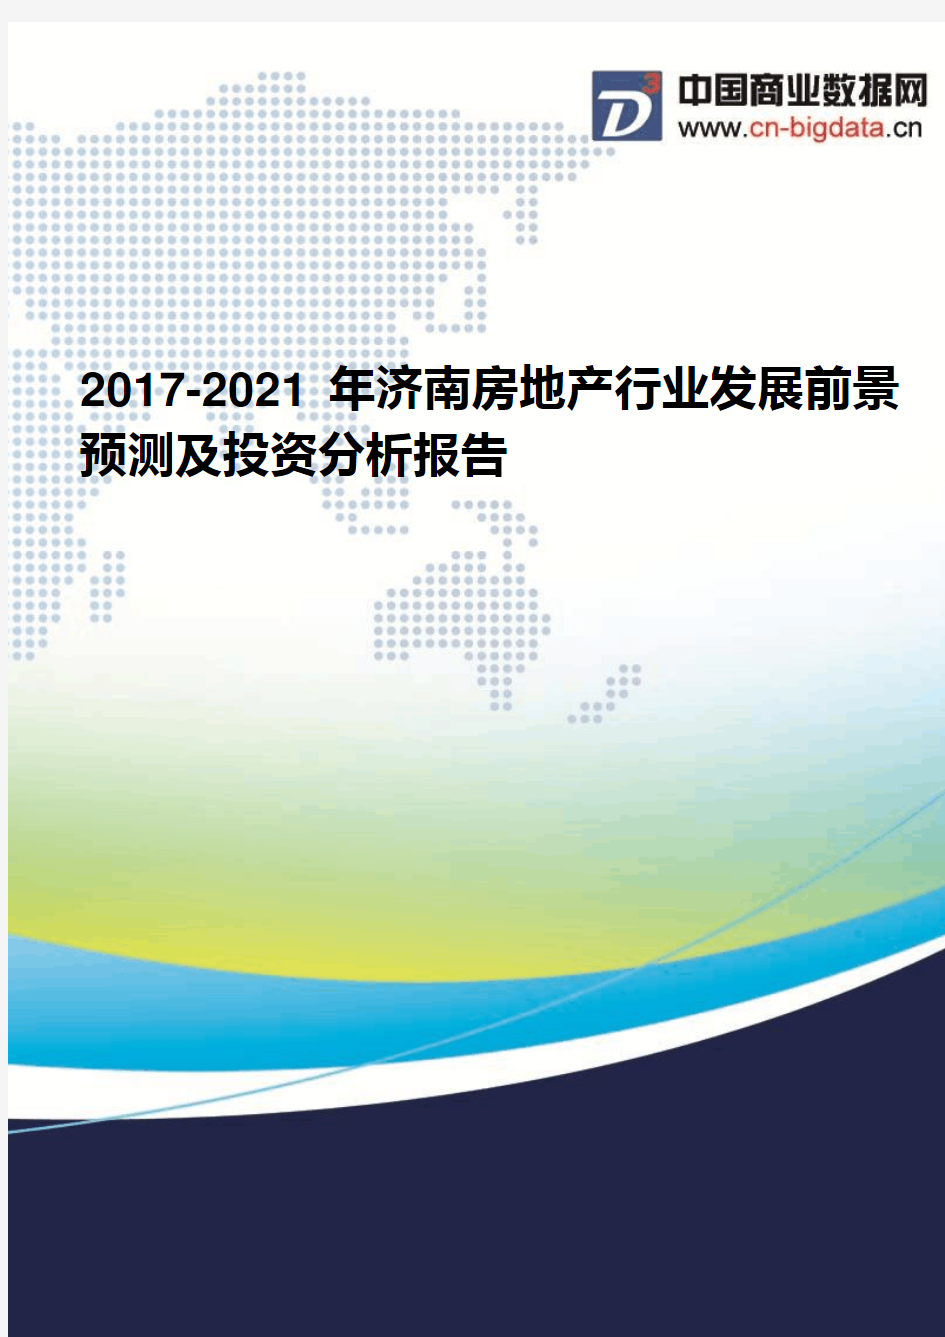 2017-2021年济南房地产行业发展前景预测及投资分析报告(2017版目录)